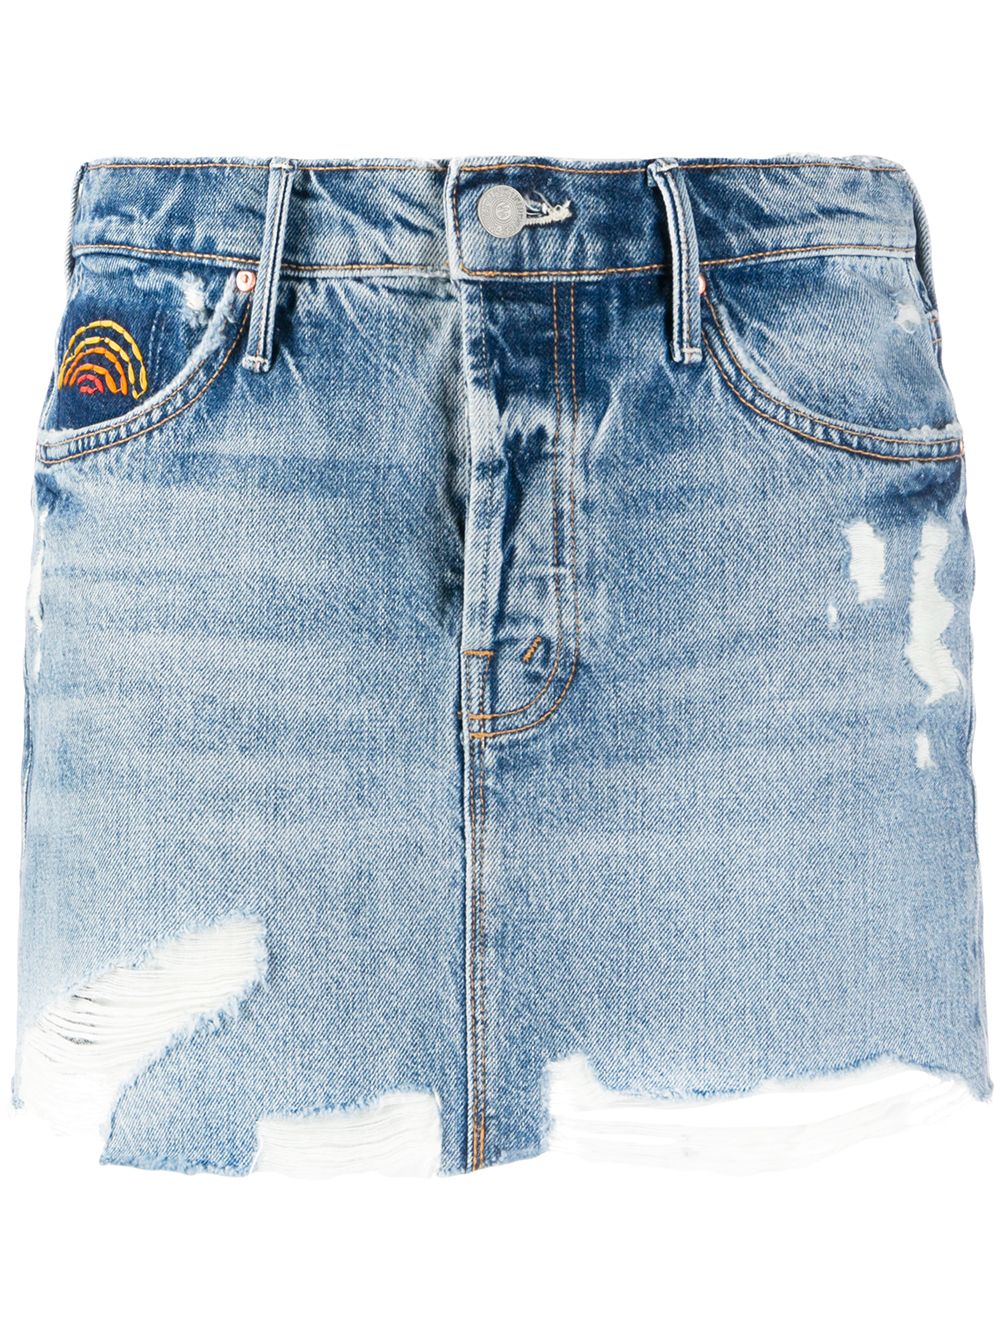 фото Mother джинсовая юбка с бахромой